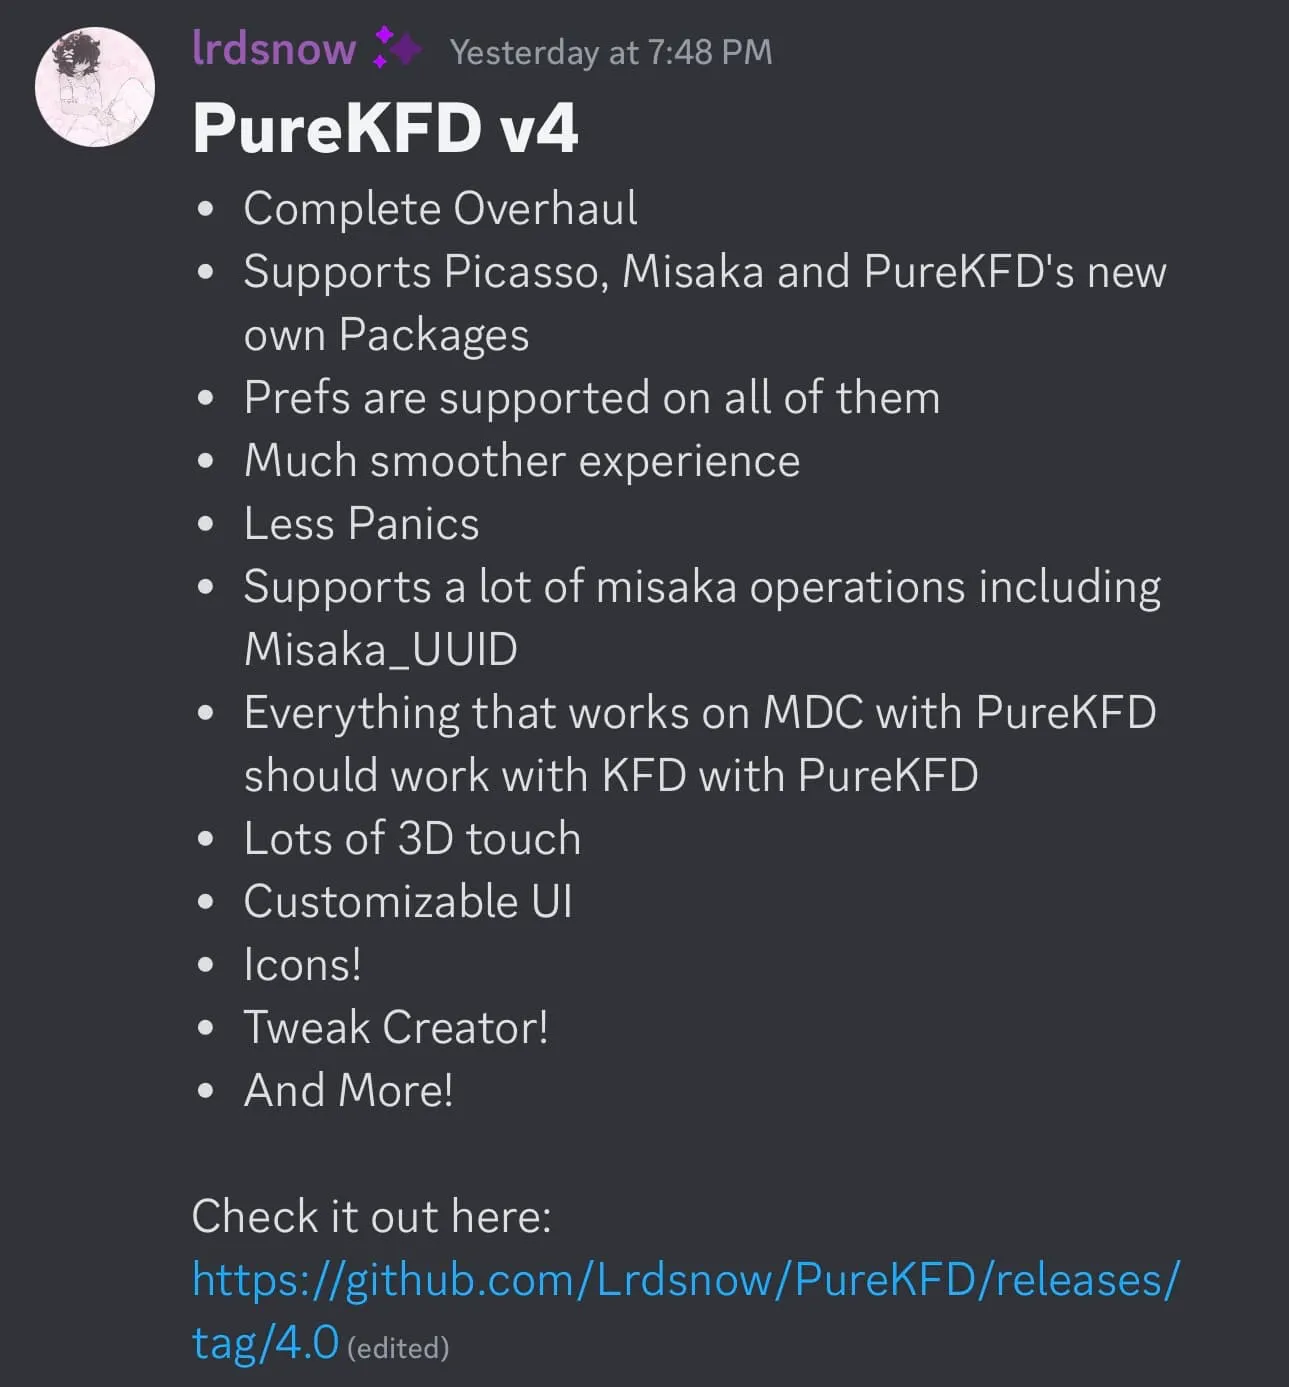 PureKFD v4 wurde als komplette Überarbeitung angekündigt.